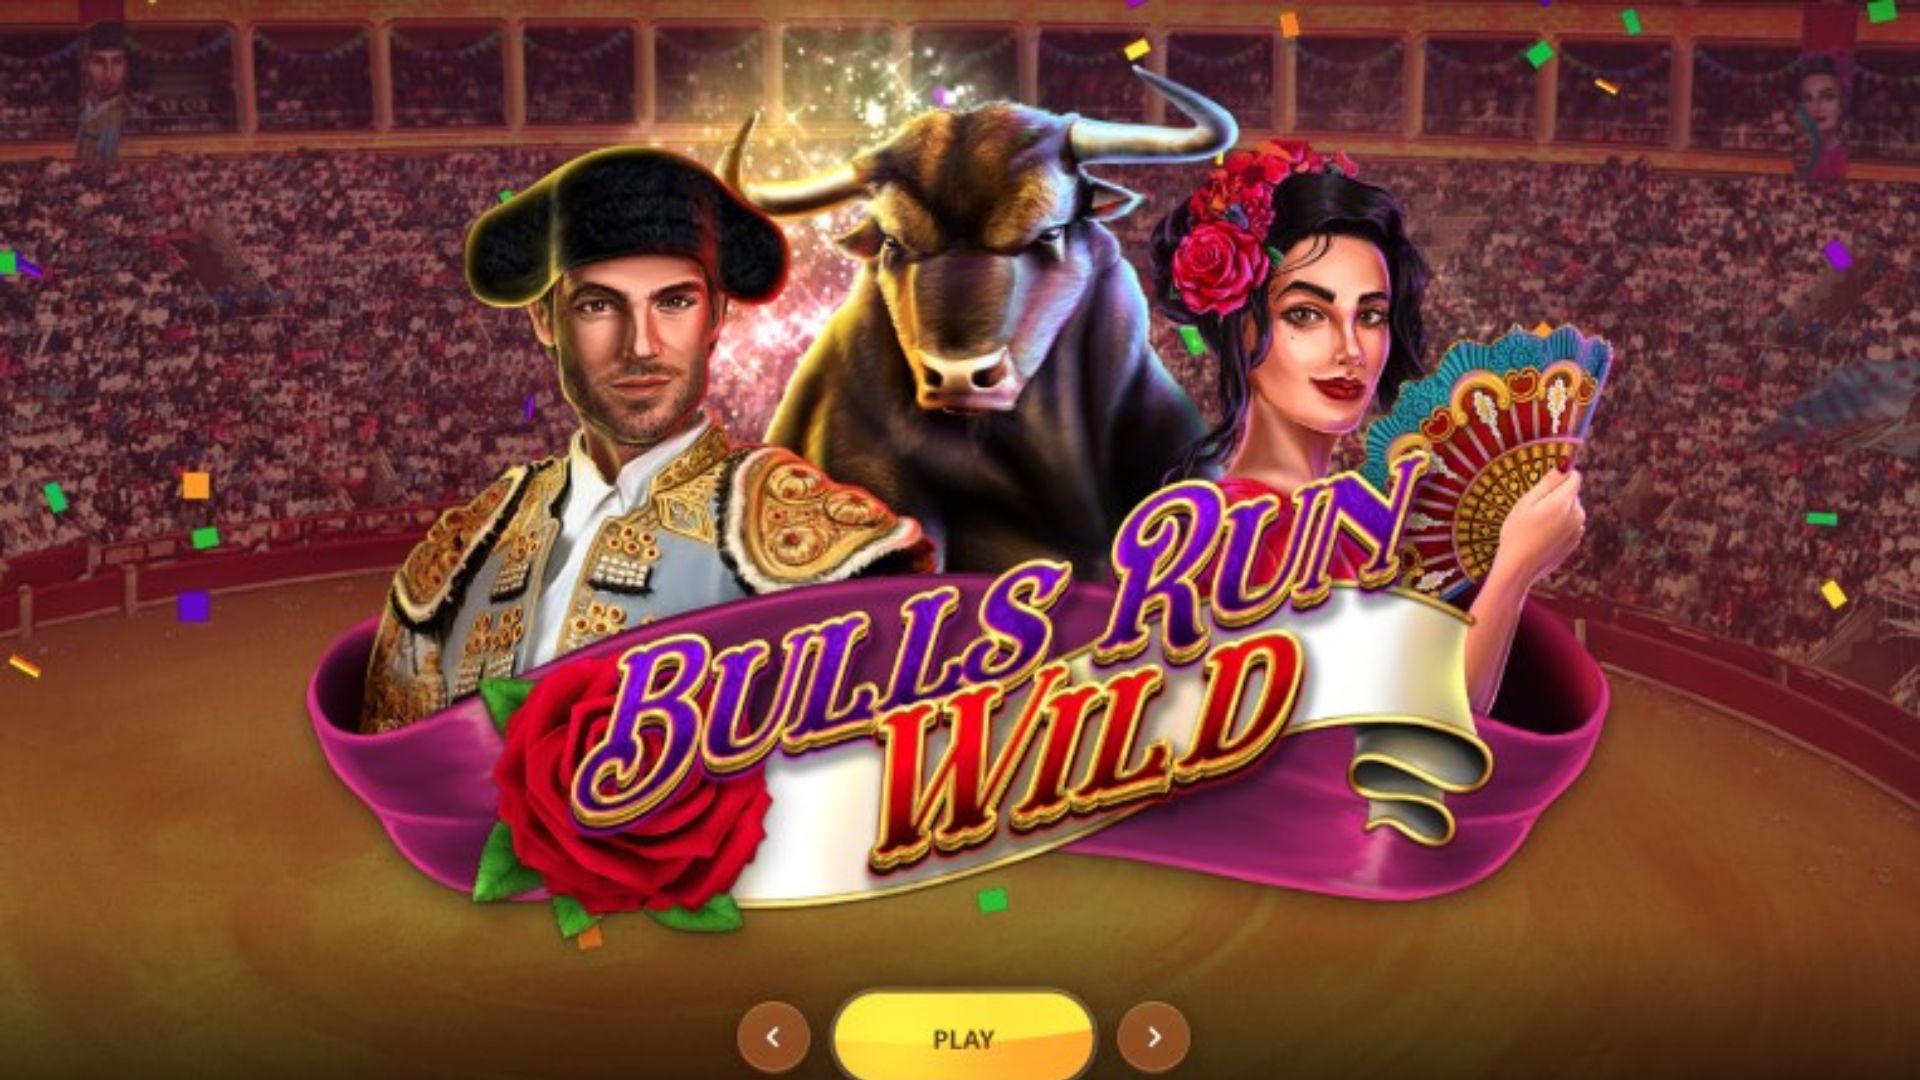 bonus bulls run wild